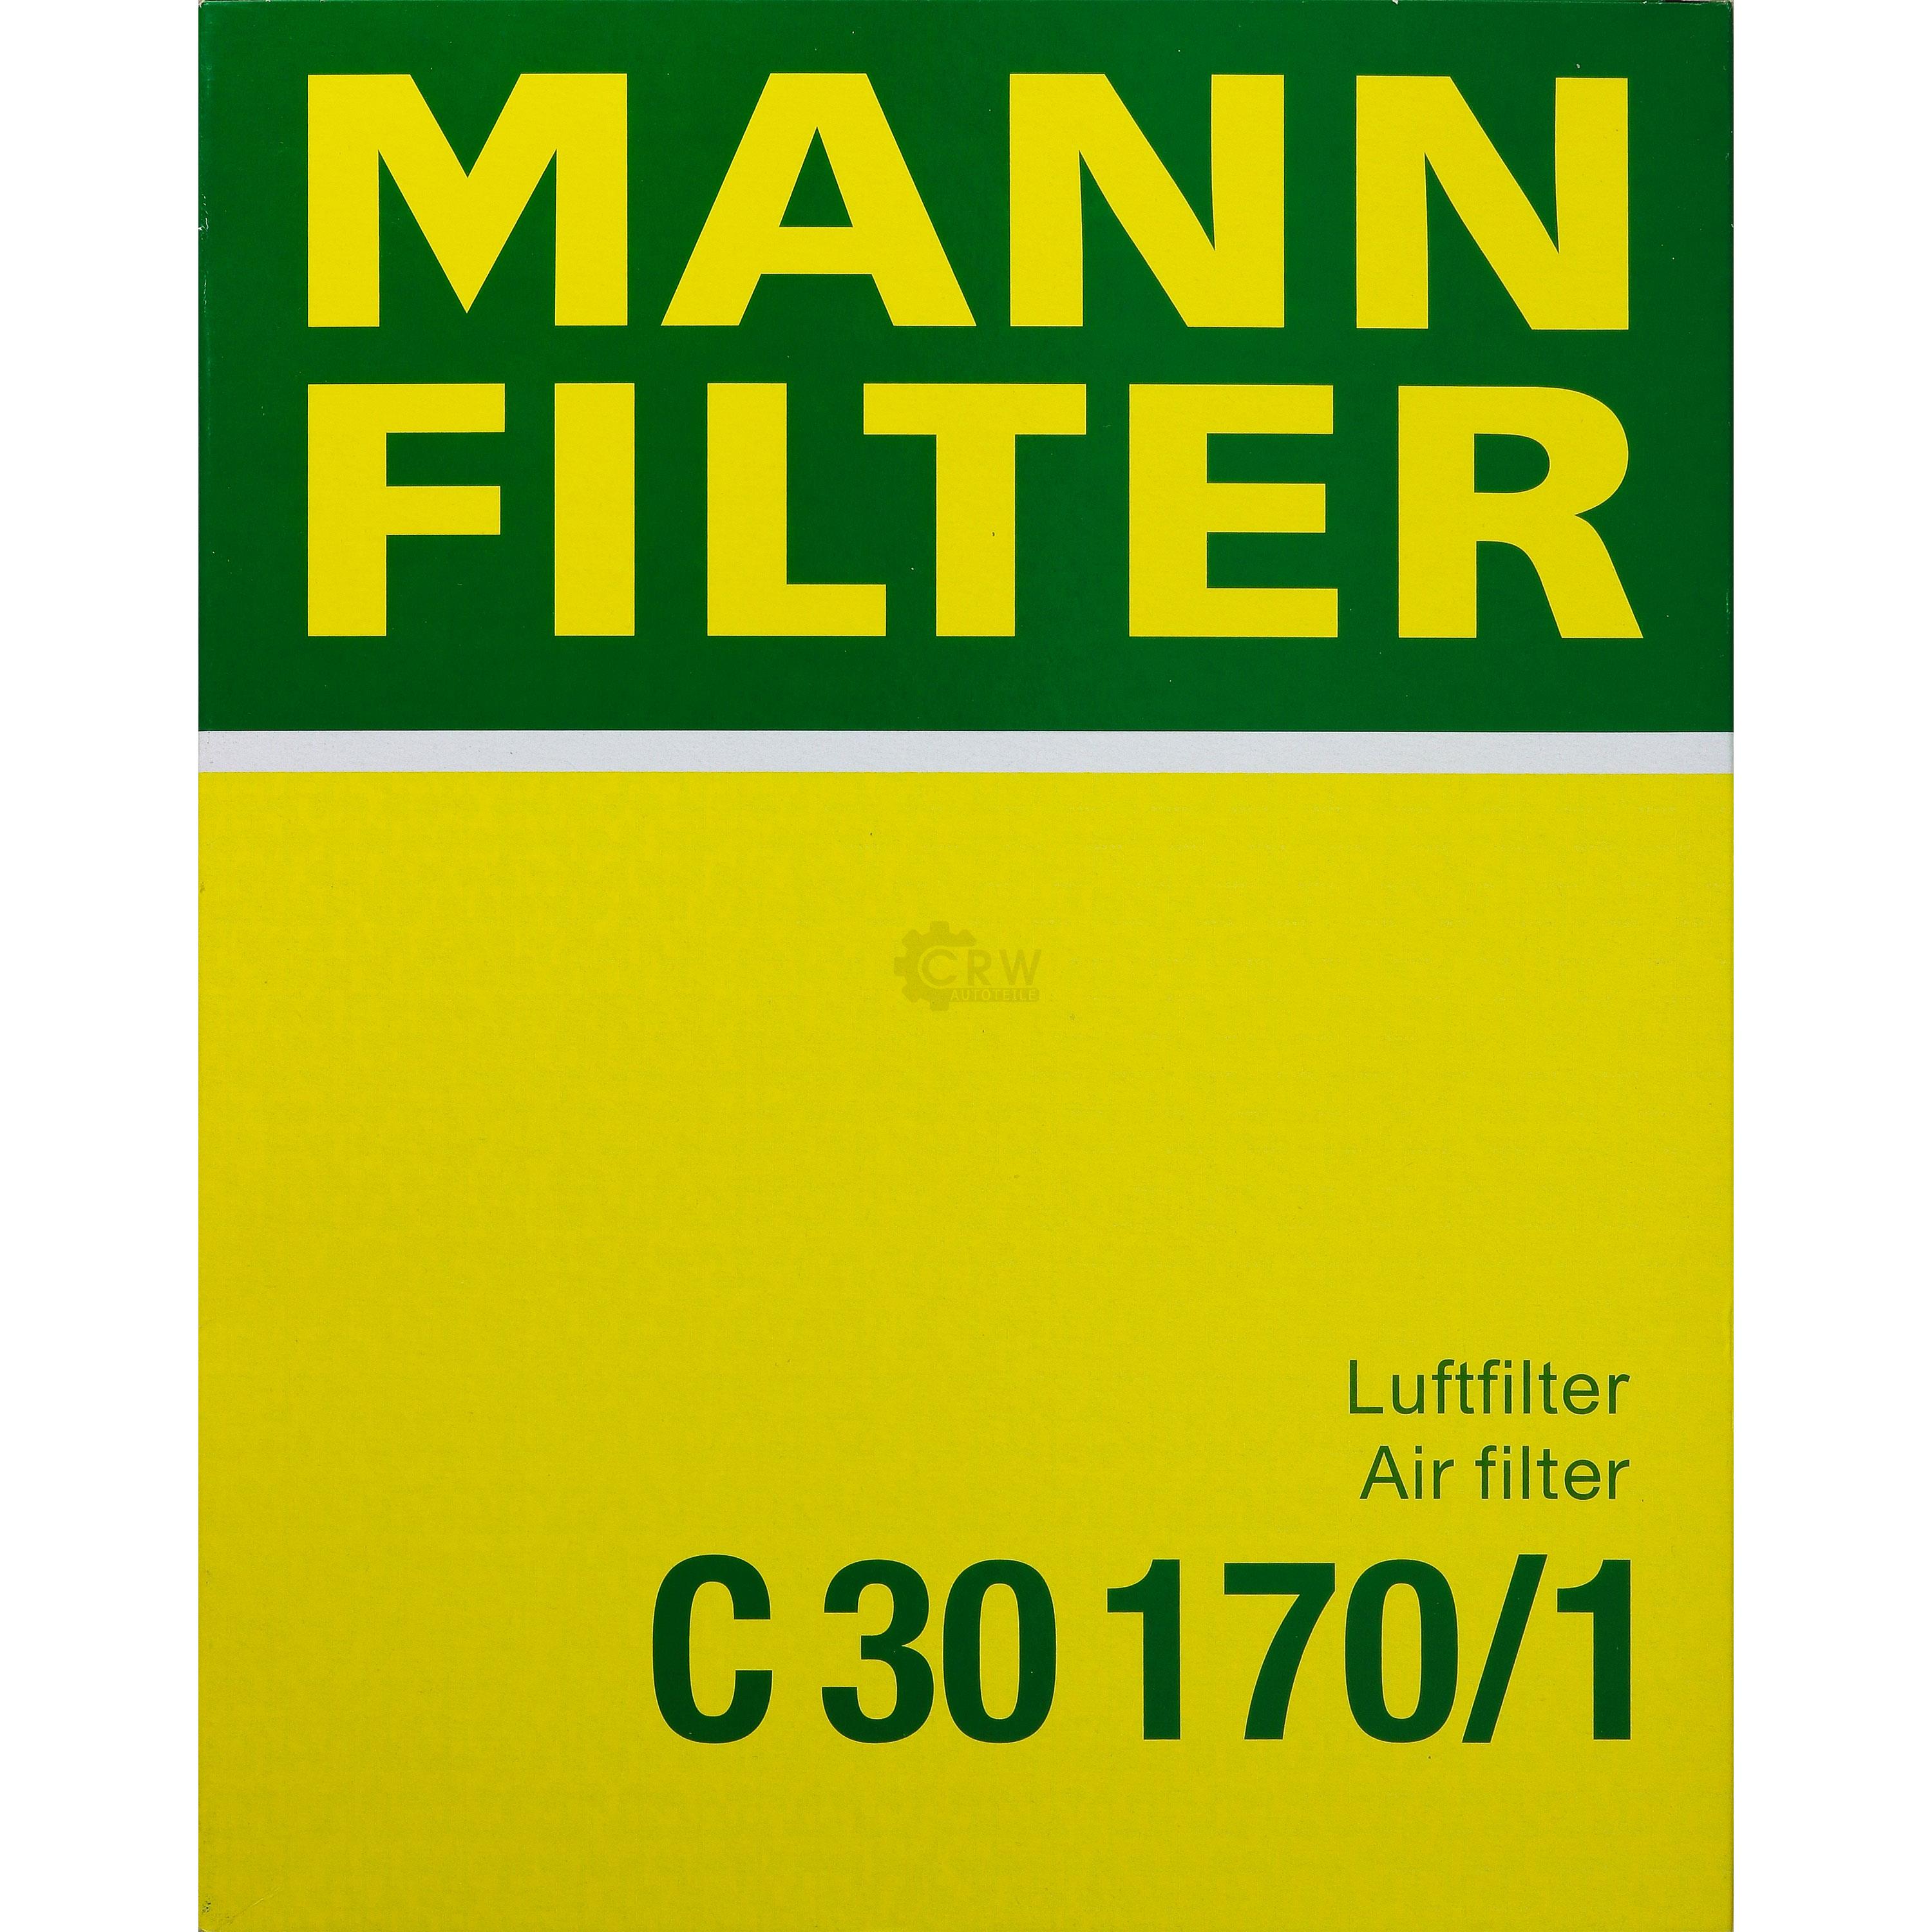 MANN-FILTER Luftfilter für Saab 9-3 Cabriolet YS3F 1.9 TiD 2.2 Cadillac BLS